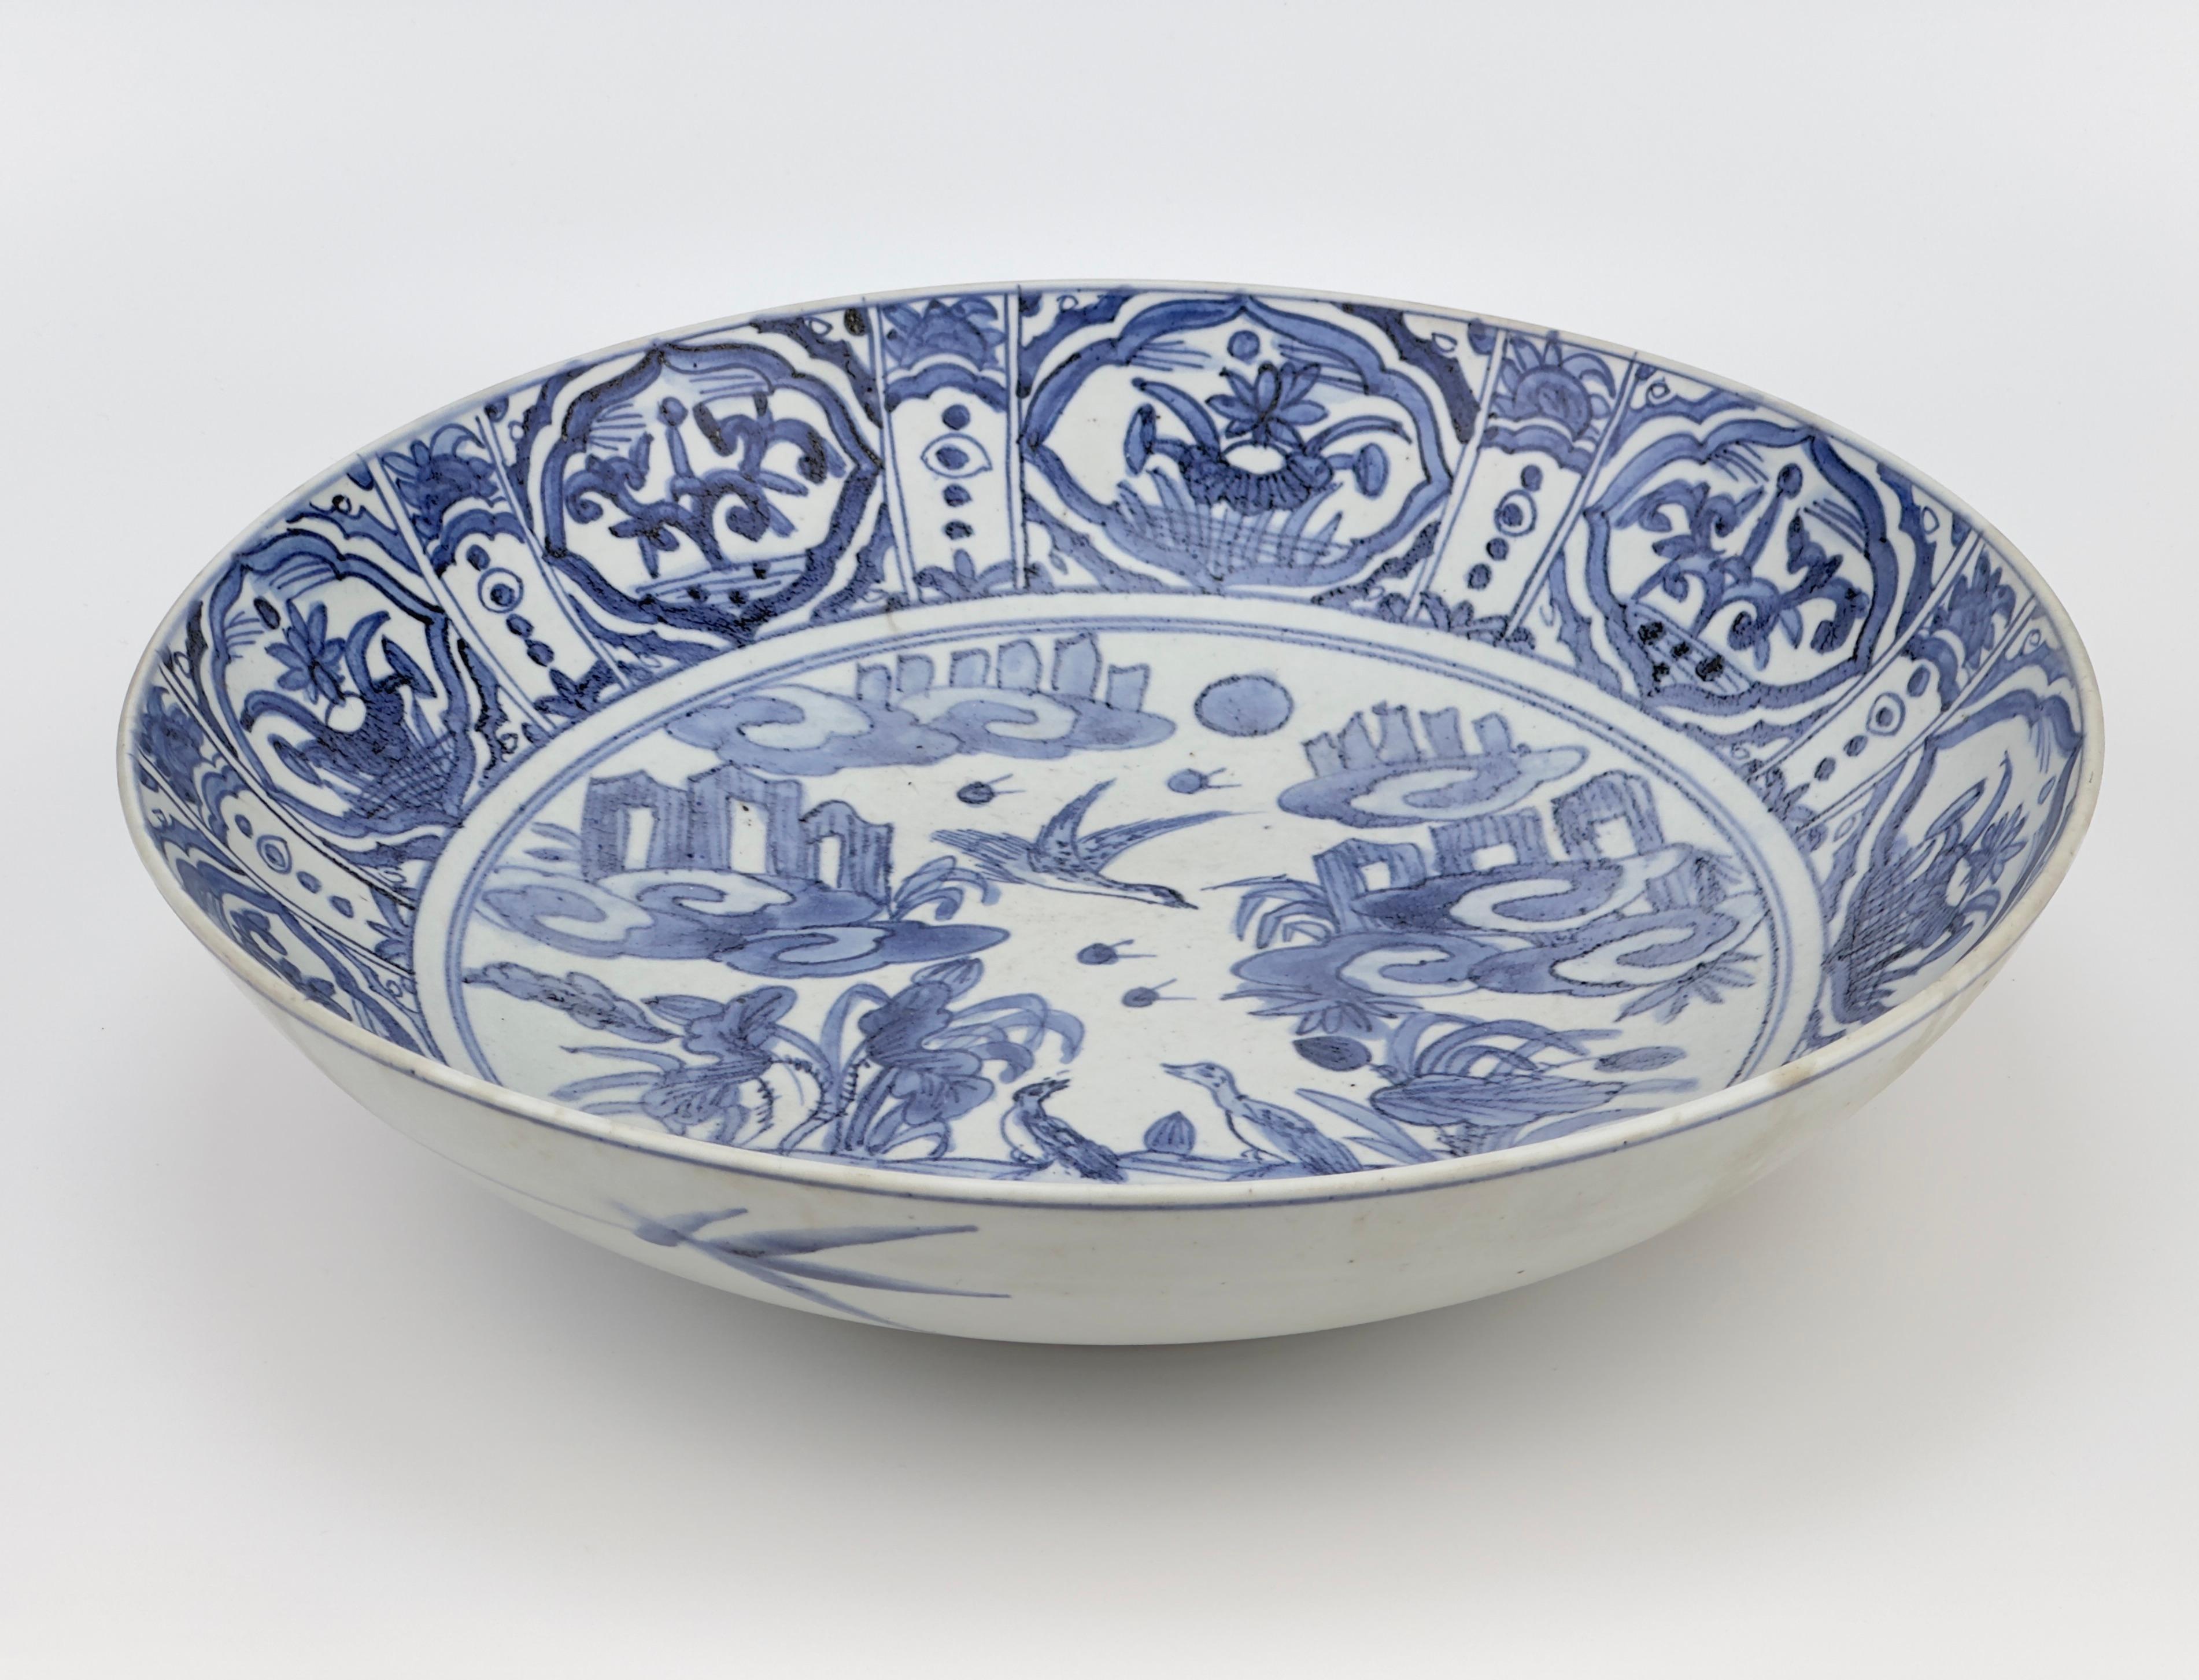 Célèbre assiette en porcelaine chinoise bleue et blanche de la fin de la dynastie des Ming. Des oiseaux sont représentés jouant dans la nature avec des rochers. Par rapport au même type de porcelaine swatow, le développement de la couleur bleue et